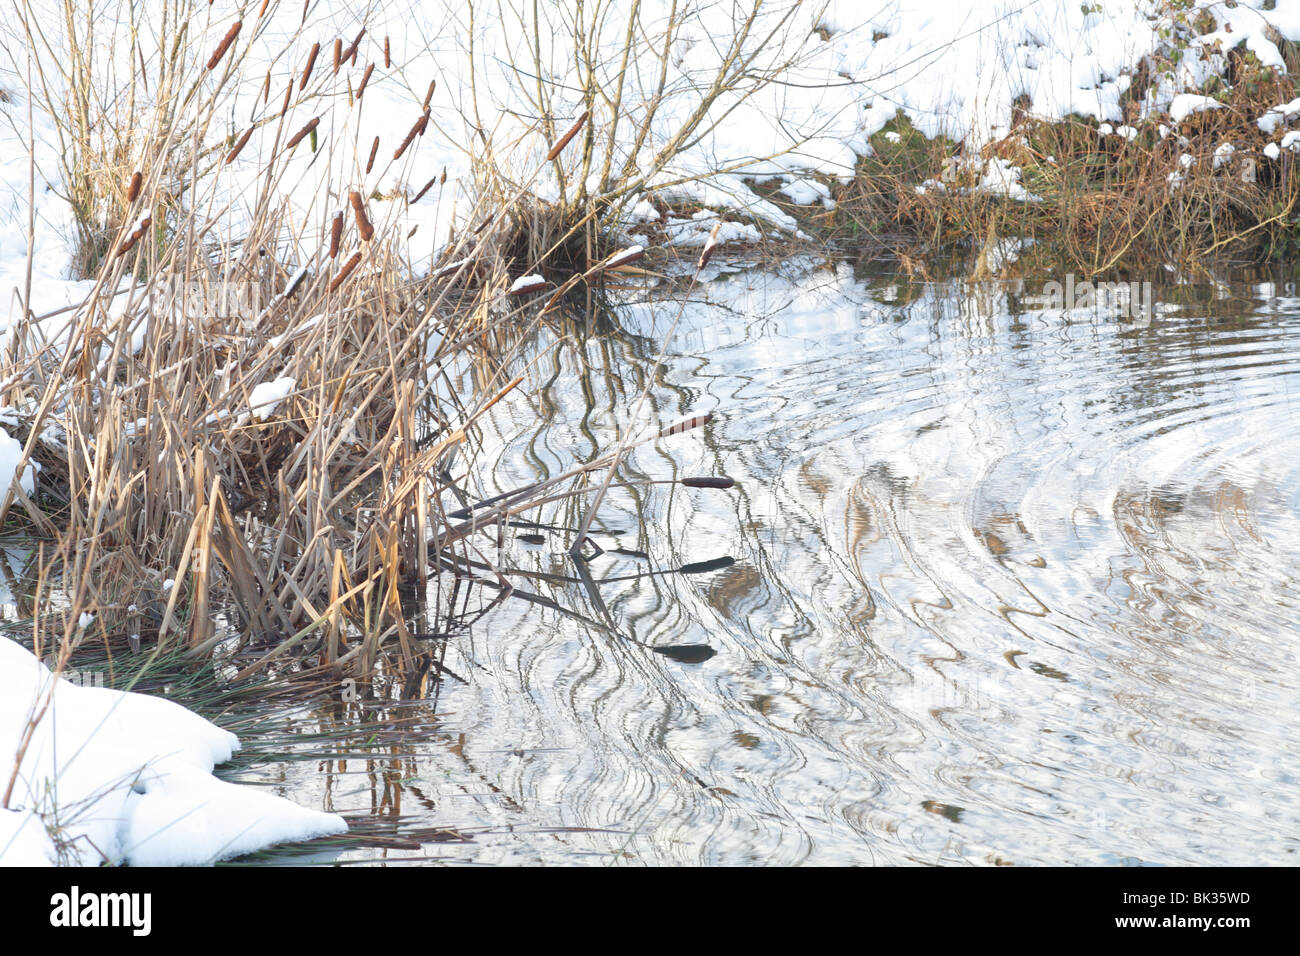 Leeser Rohrkolben oder Reedmace (Typha Angustifolia) tot Stiele und Seedheads an der Seite von einem Teich im Winter. Powys, Wales. Stockfoto